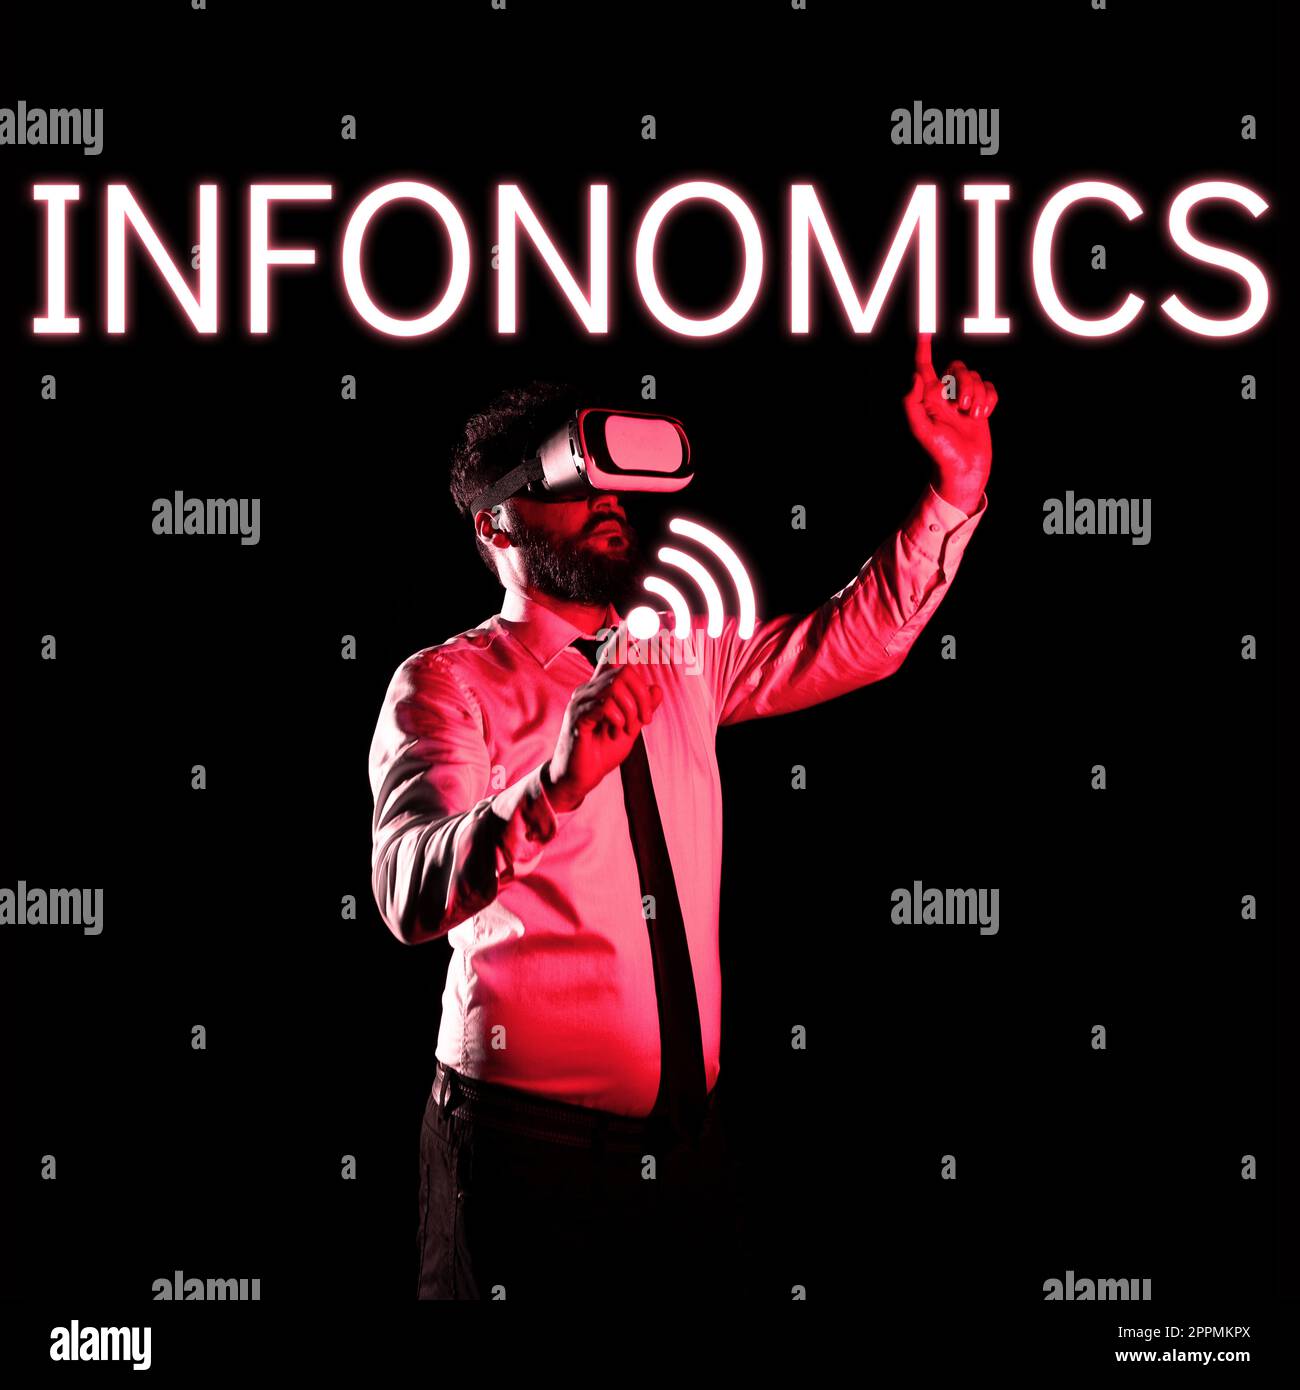 Konzeptionelle Darstellung Infonomics. Visuelles Bild des Internetkonzepts, das zur Darstellung von Informationen oder Daten verwendet wird Stockfoto